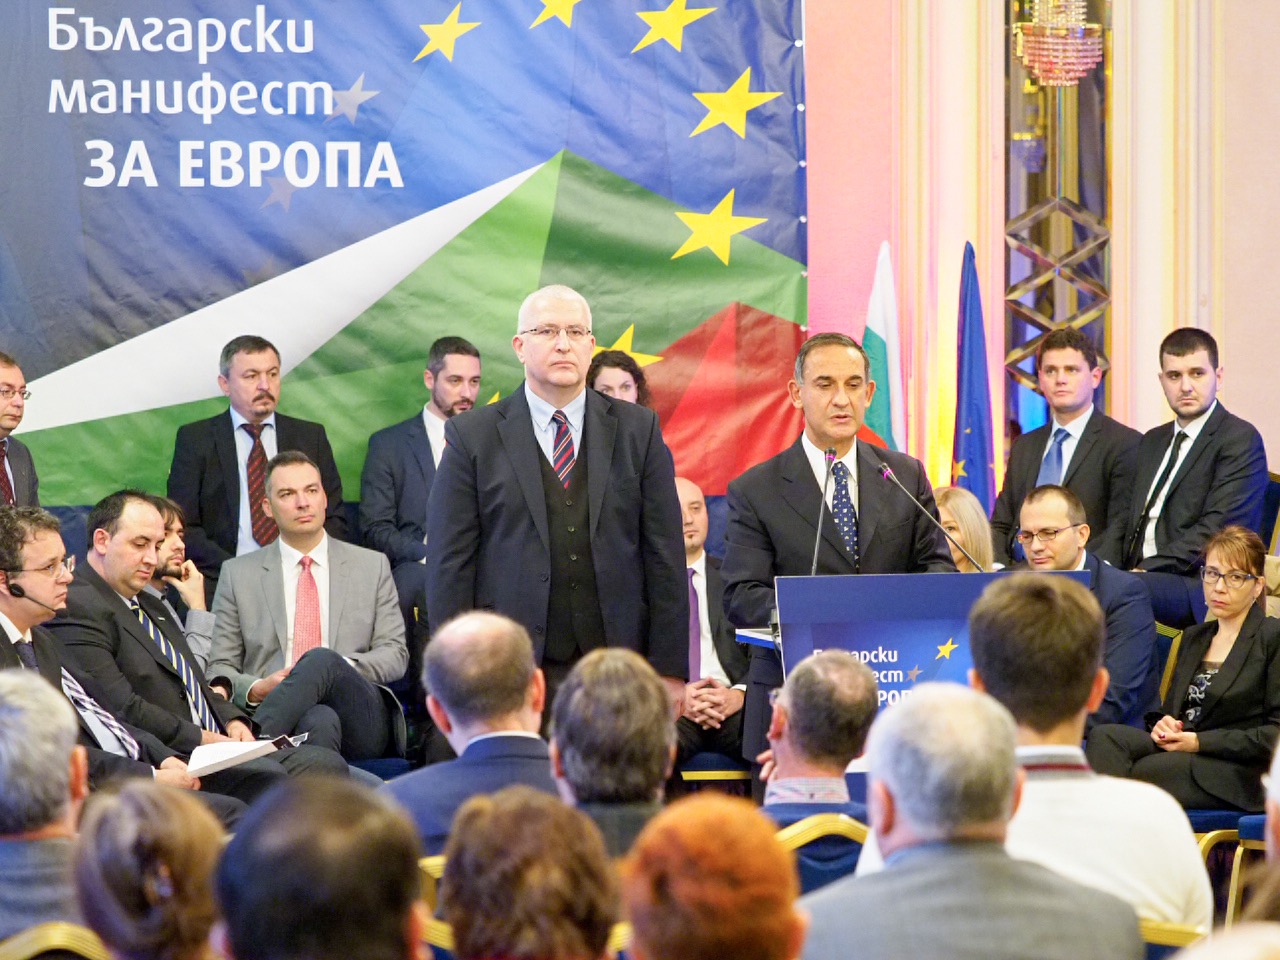 Български манифест за Европа